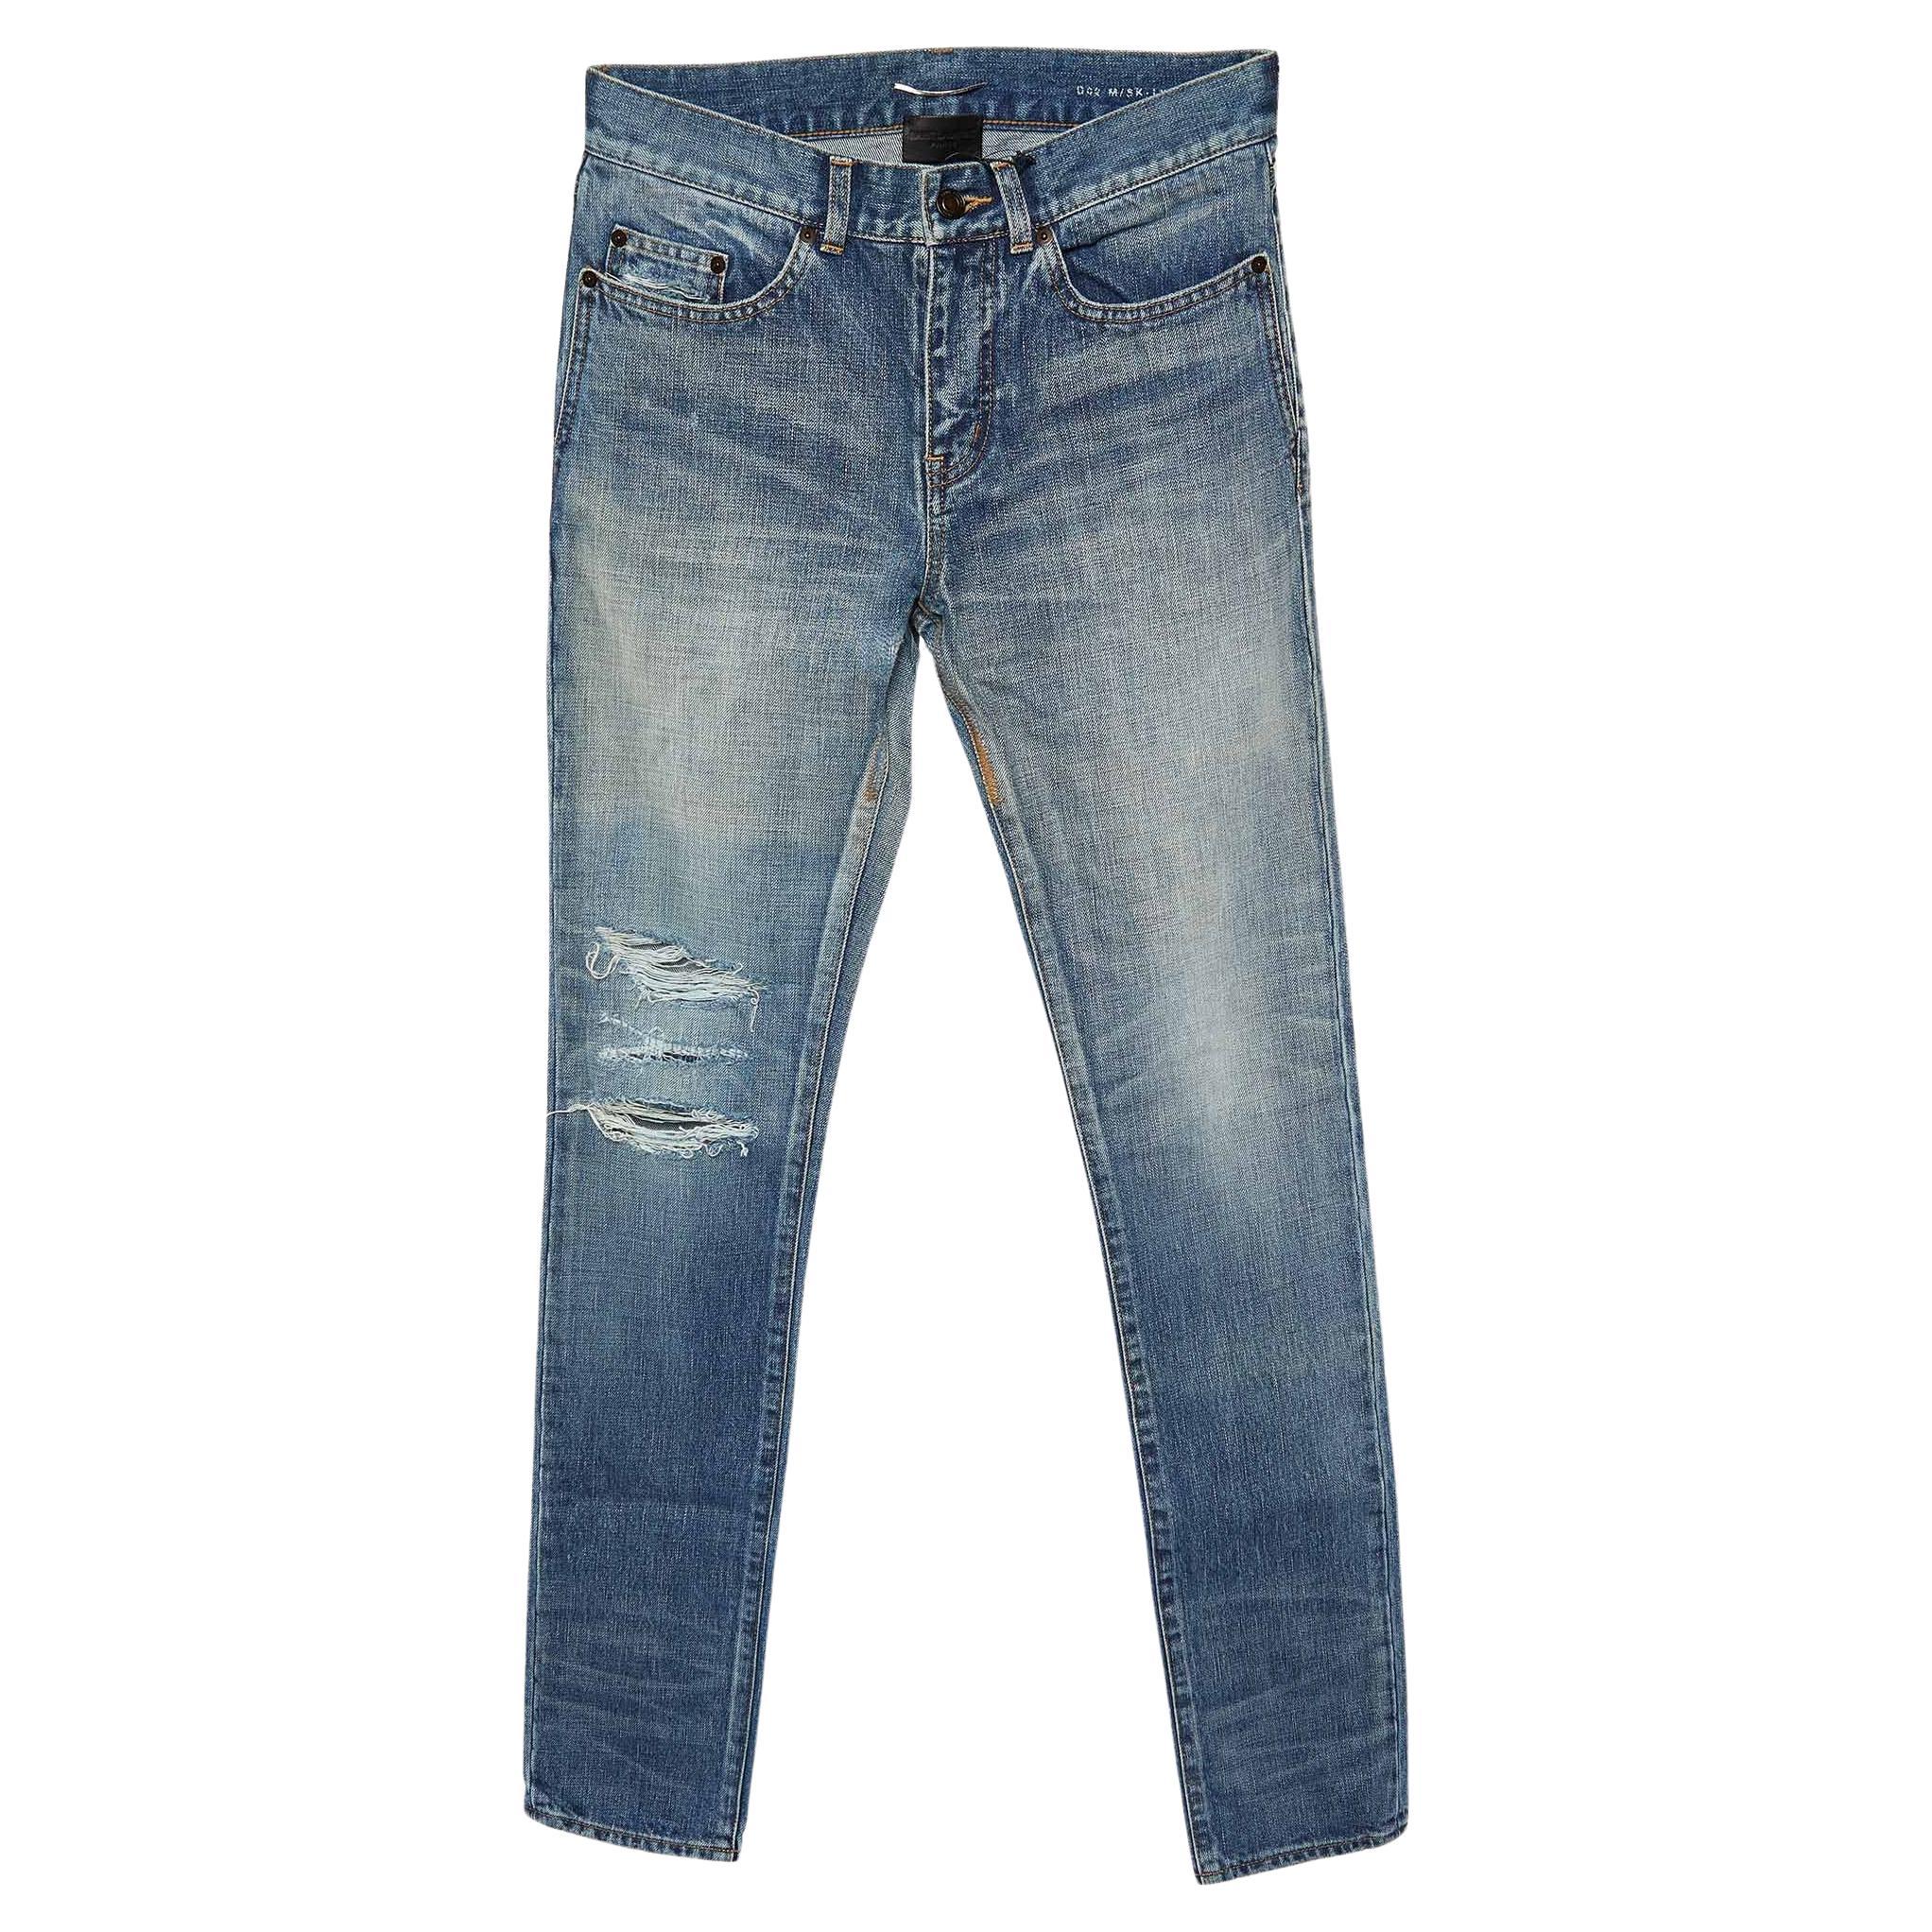 How do I clean Saint Laurent jeans?